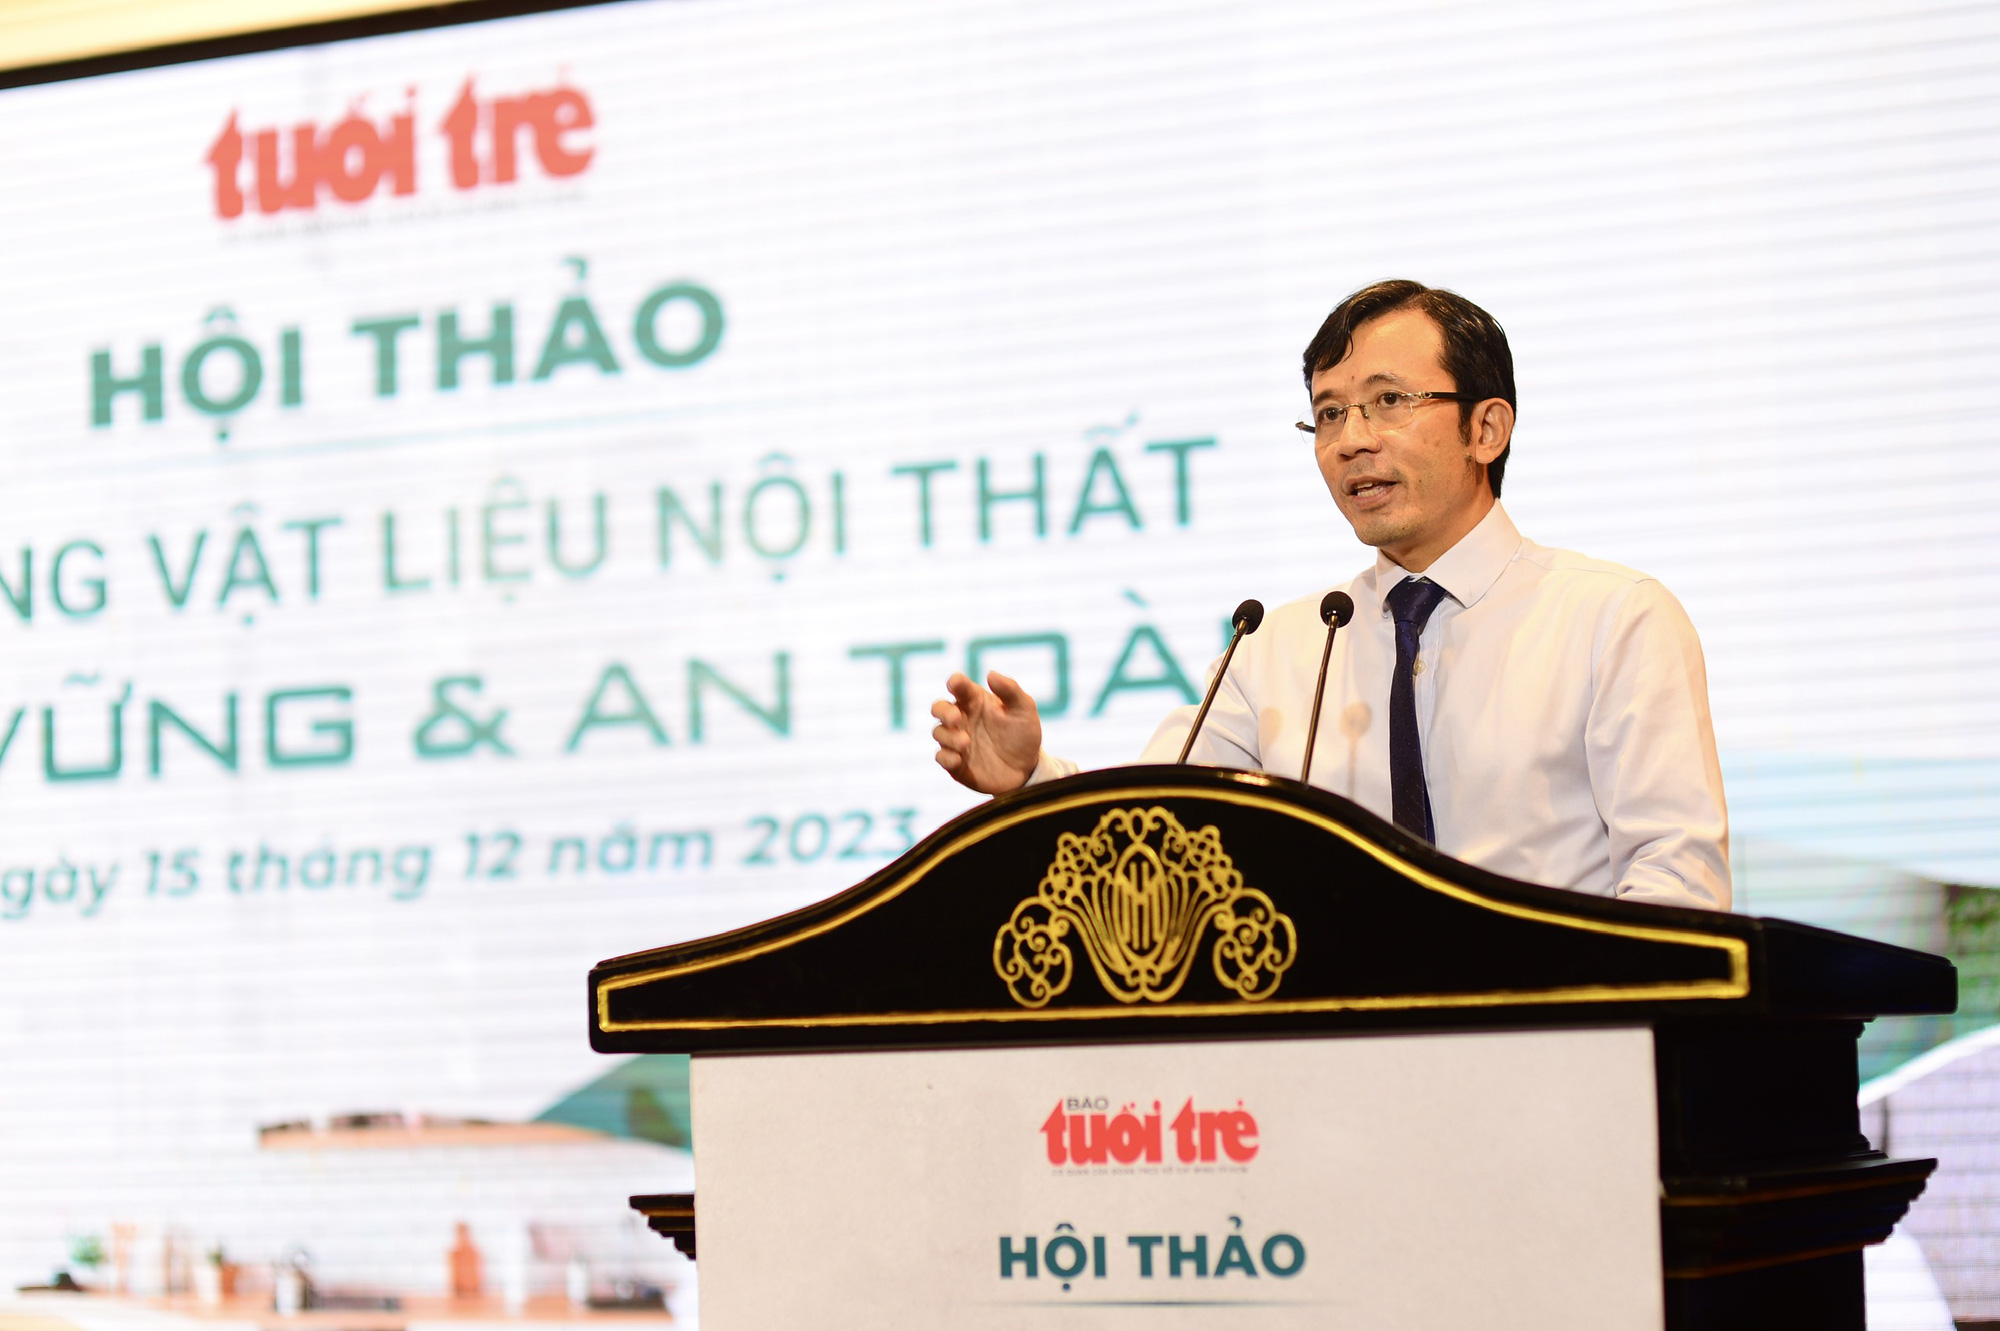 Ông Trần Xuân Toàn, phó tổng biên tập báo Tuổi Trẻ phát biểu khai mạc hội thảo Sử dụng vật liệu nội thất bền vững và an toàn - Ảnh: QUANG ĐỊNH